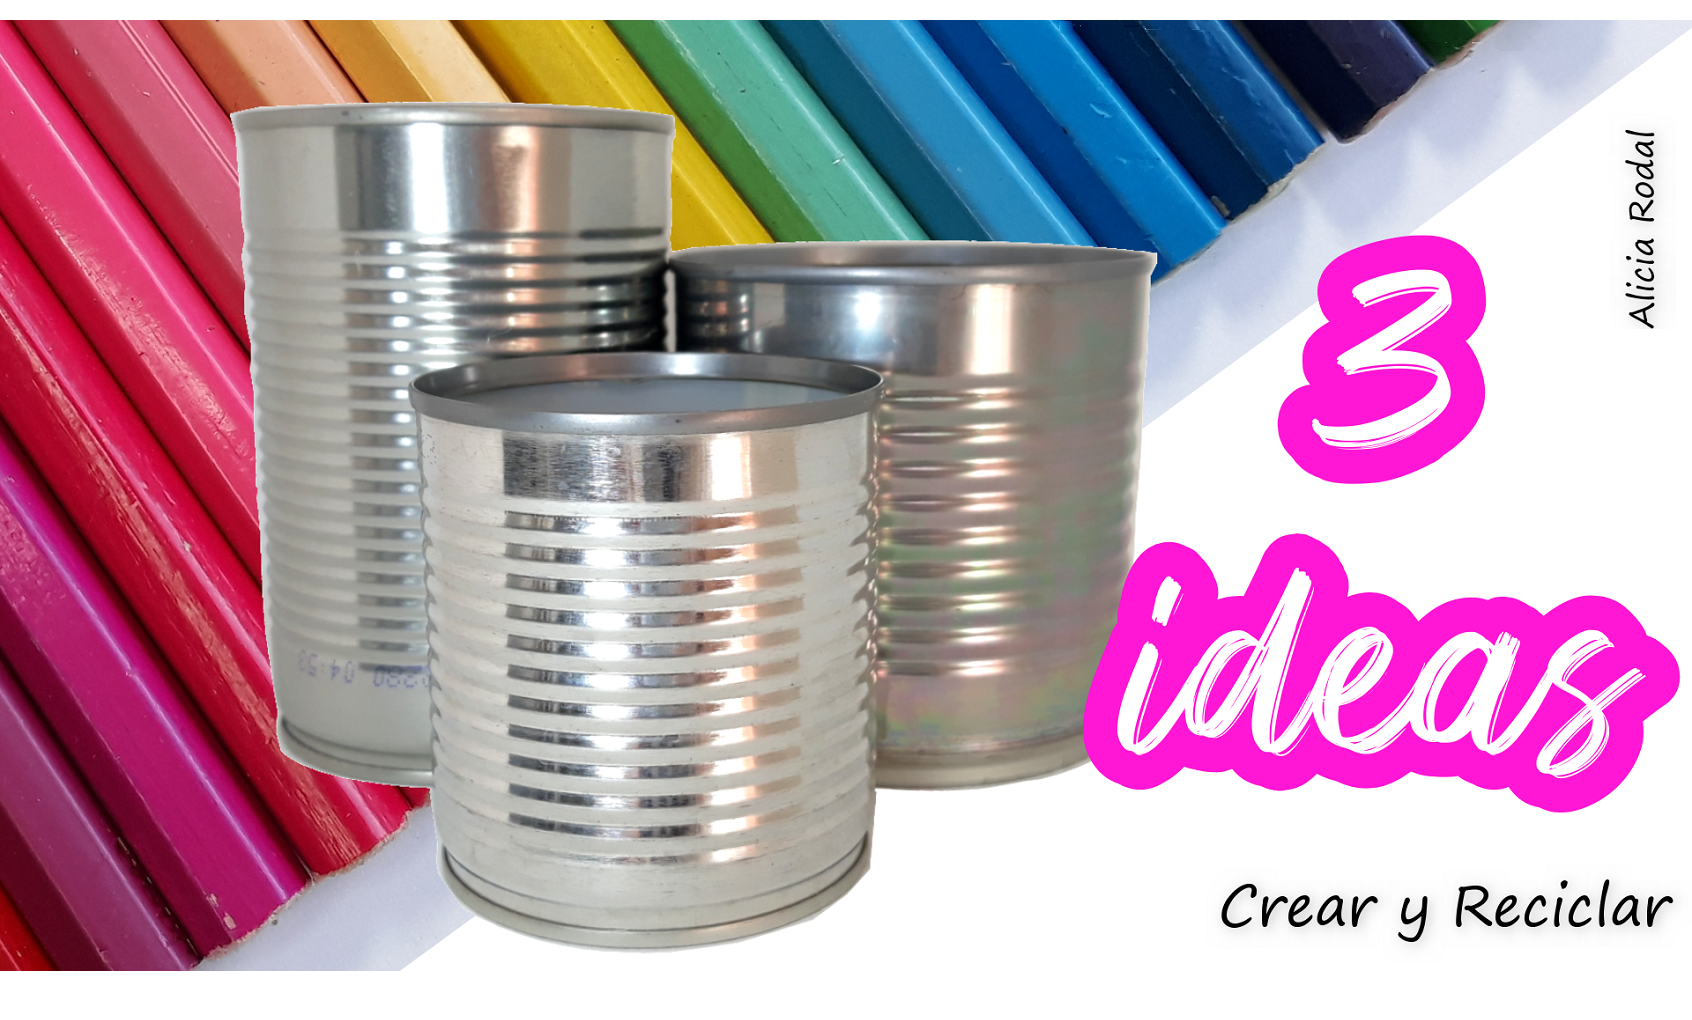 bicapa Generosidad Vibrar 3 ideas divertidas para decorar latas de aluminio - Crear y Reciclar